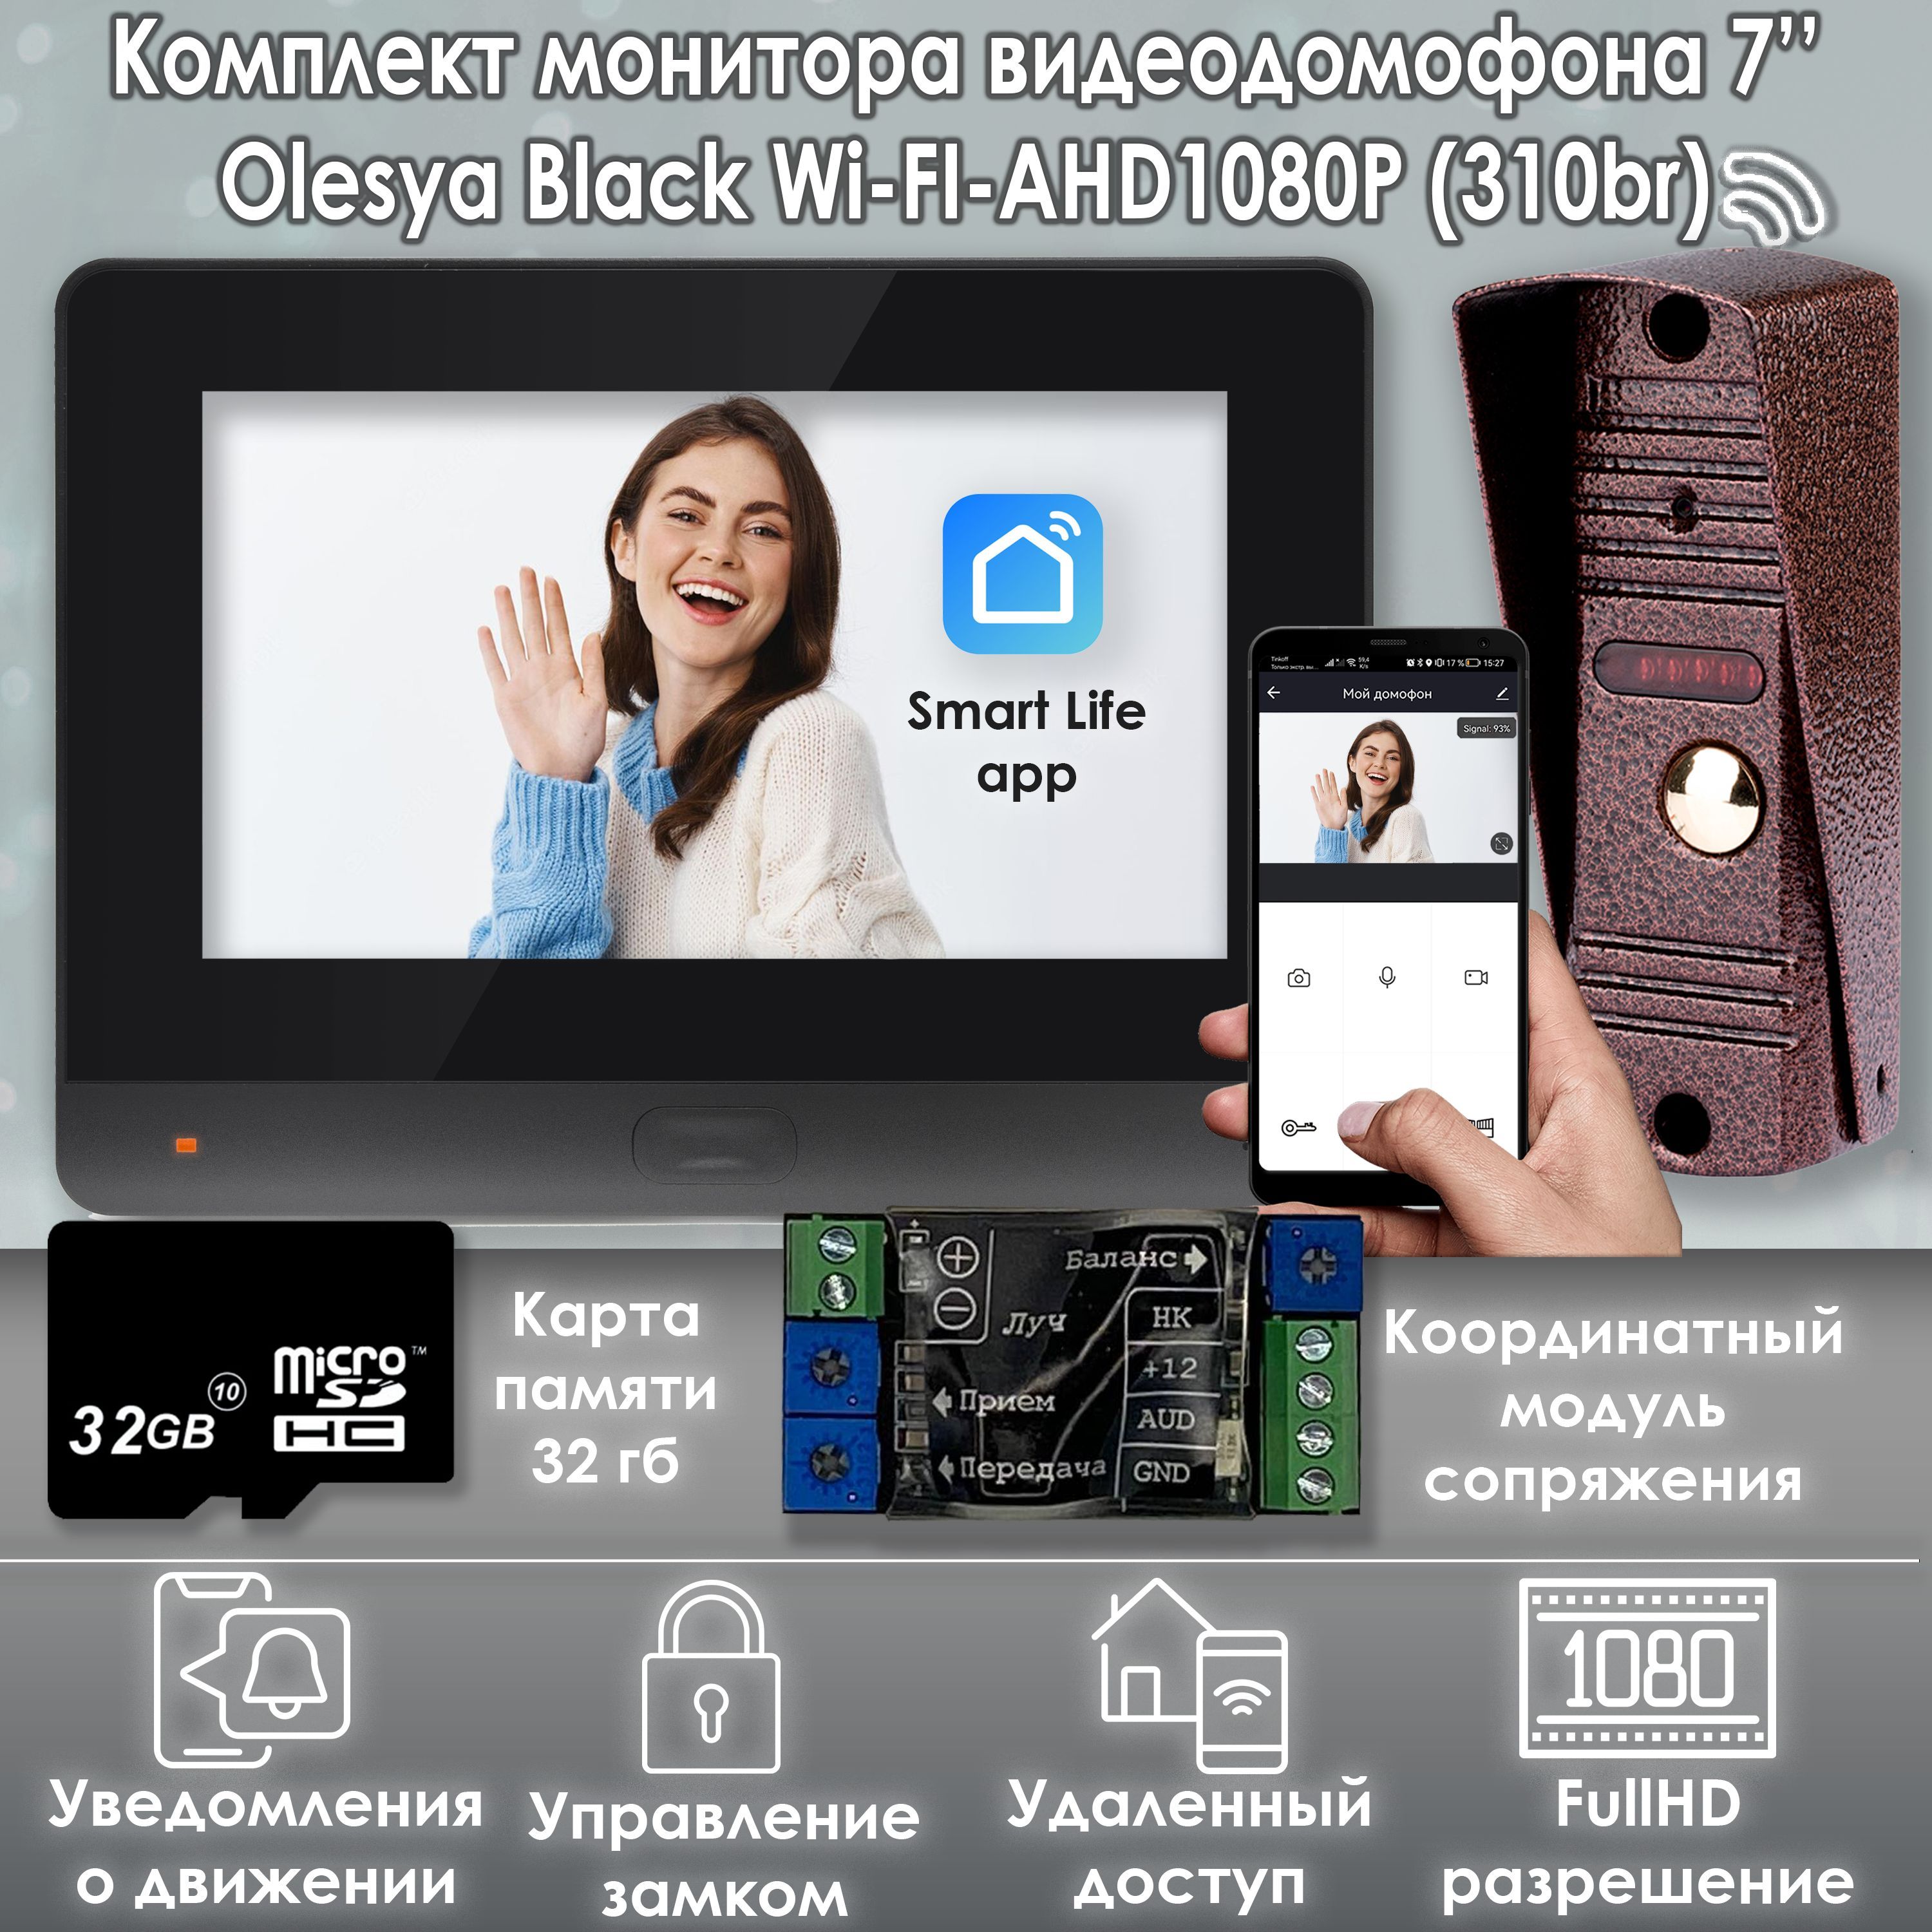 Комплект видеодомофона Alfavision Olesya Wi-Fi AHD1080P Full HD (310br), Черный органайзер на солнцезащитный козырек 13 5×34 5 см